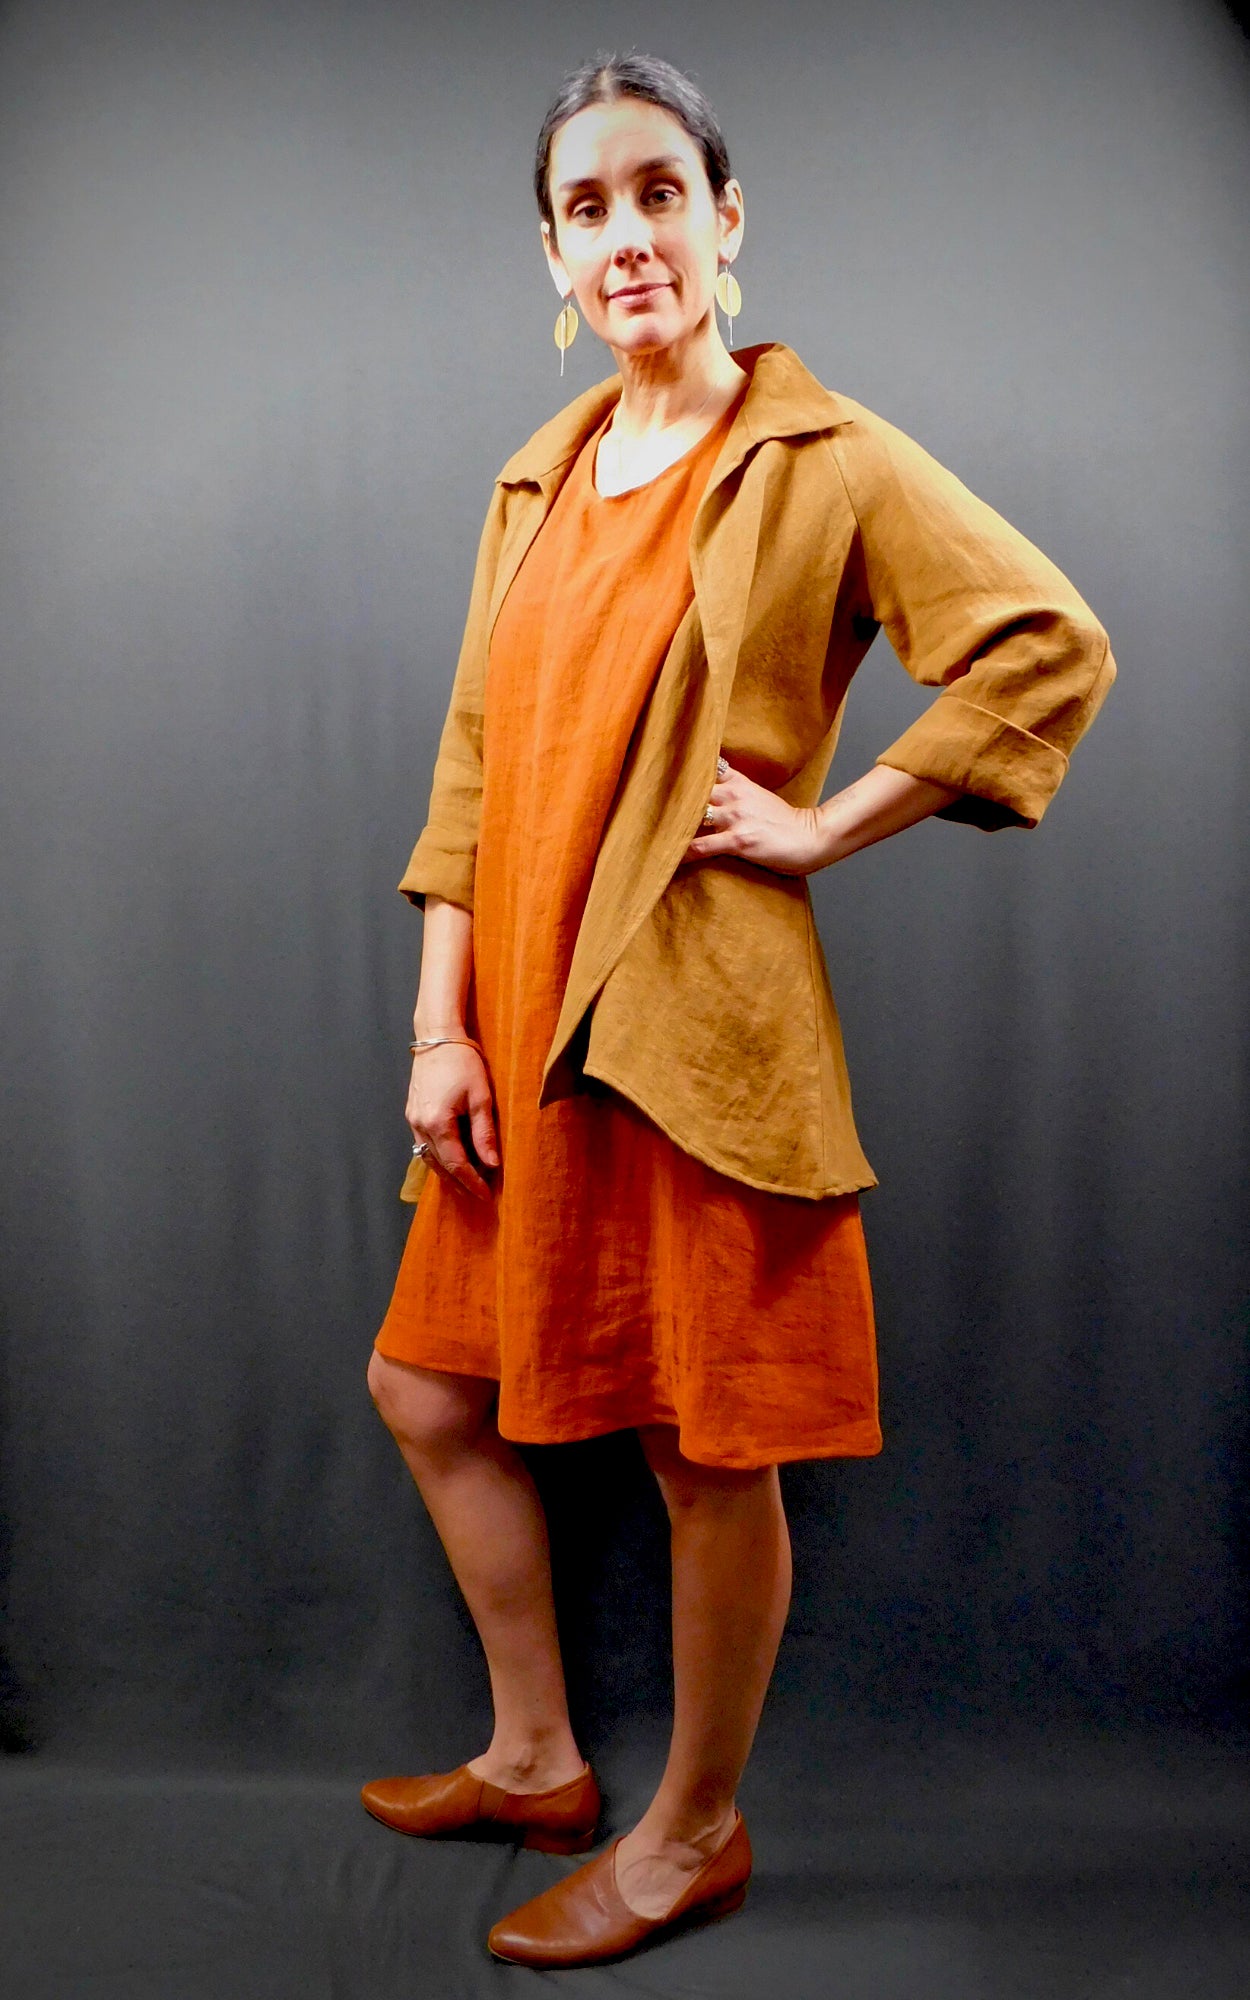 100% Linen Colour Cognac (Orange) Sleeveless Dress with pockets worn under 100% Linen Raglan Sleeve Shirt Jacket Colour Caramel